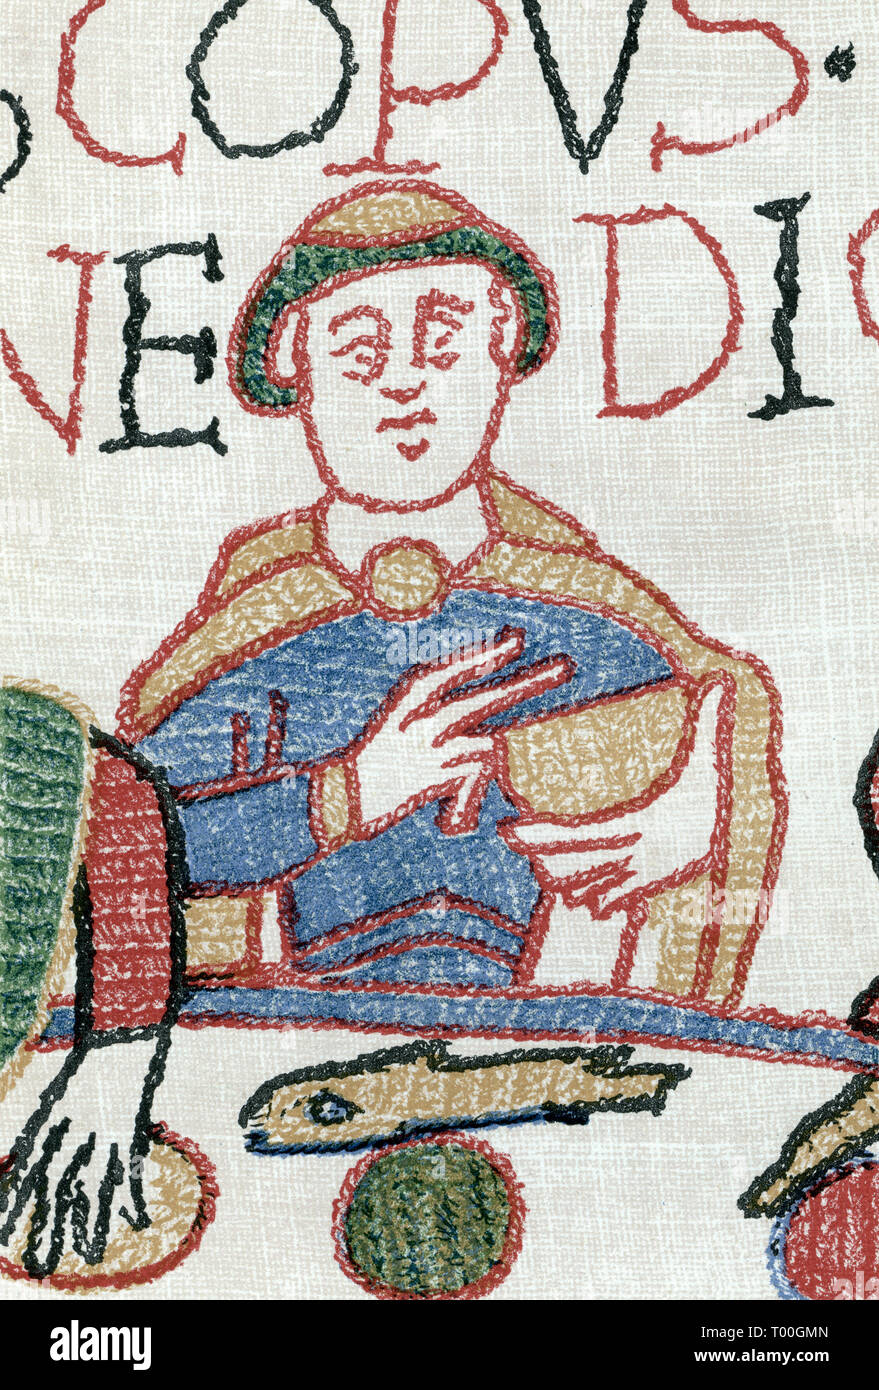 Tapisserie de Bayeux : évêque Odo disant grace après Norman landing en Angleterre, septembre, 1066. La Tapisserie de Bayeux est un tissu brodé mesurant environ 70 mètres (230 pi) de long et de 50 centimètres (20 pouces) de hauteur. Il décrit les événements qui ont mené à la conquête de l'Angleterre Concernant William, duc de Normandie, et Harold, comte de Wessex, plus tard le roi d'Angleterre, et aboutissant à la bataille de Hastings. Banque D'Images